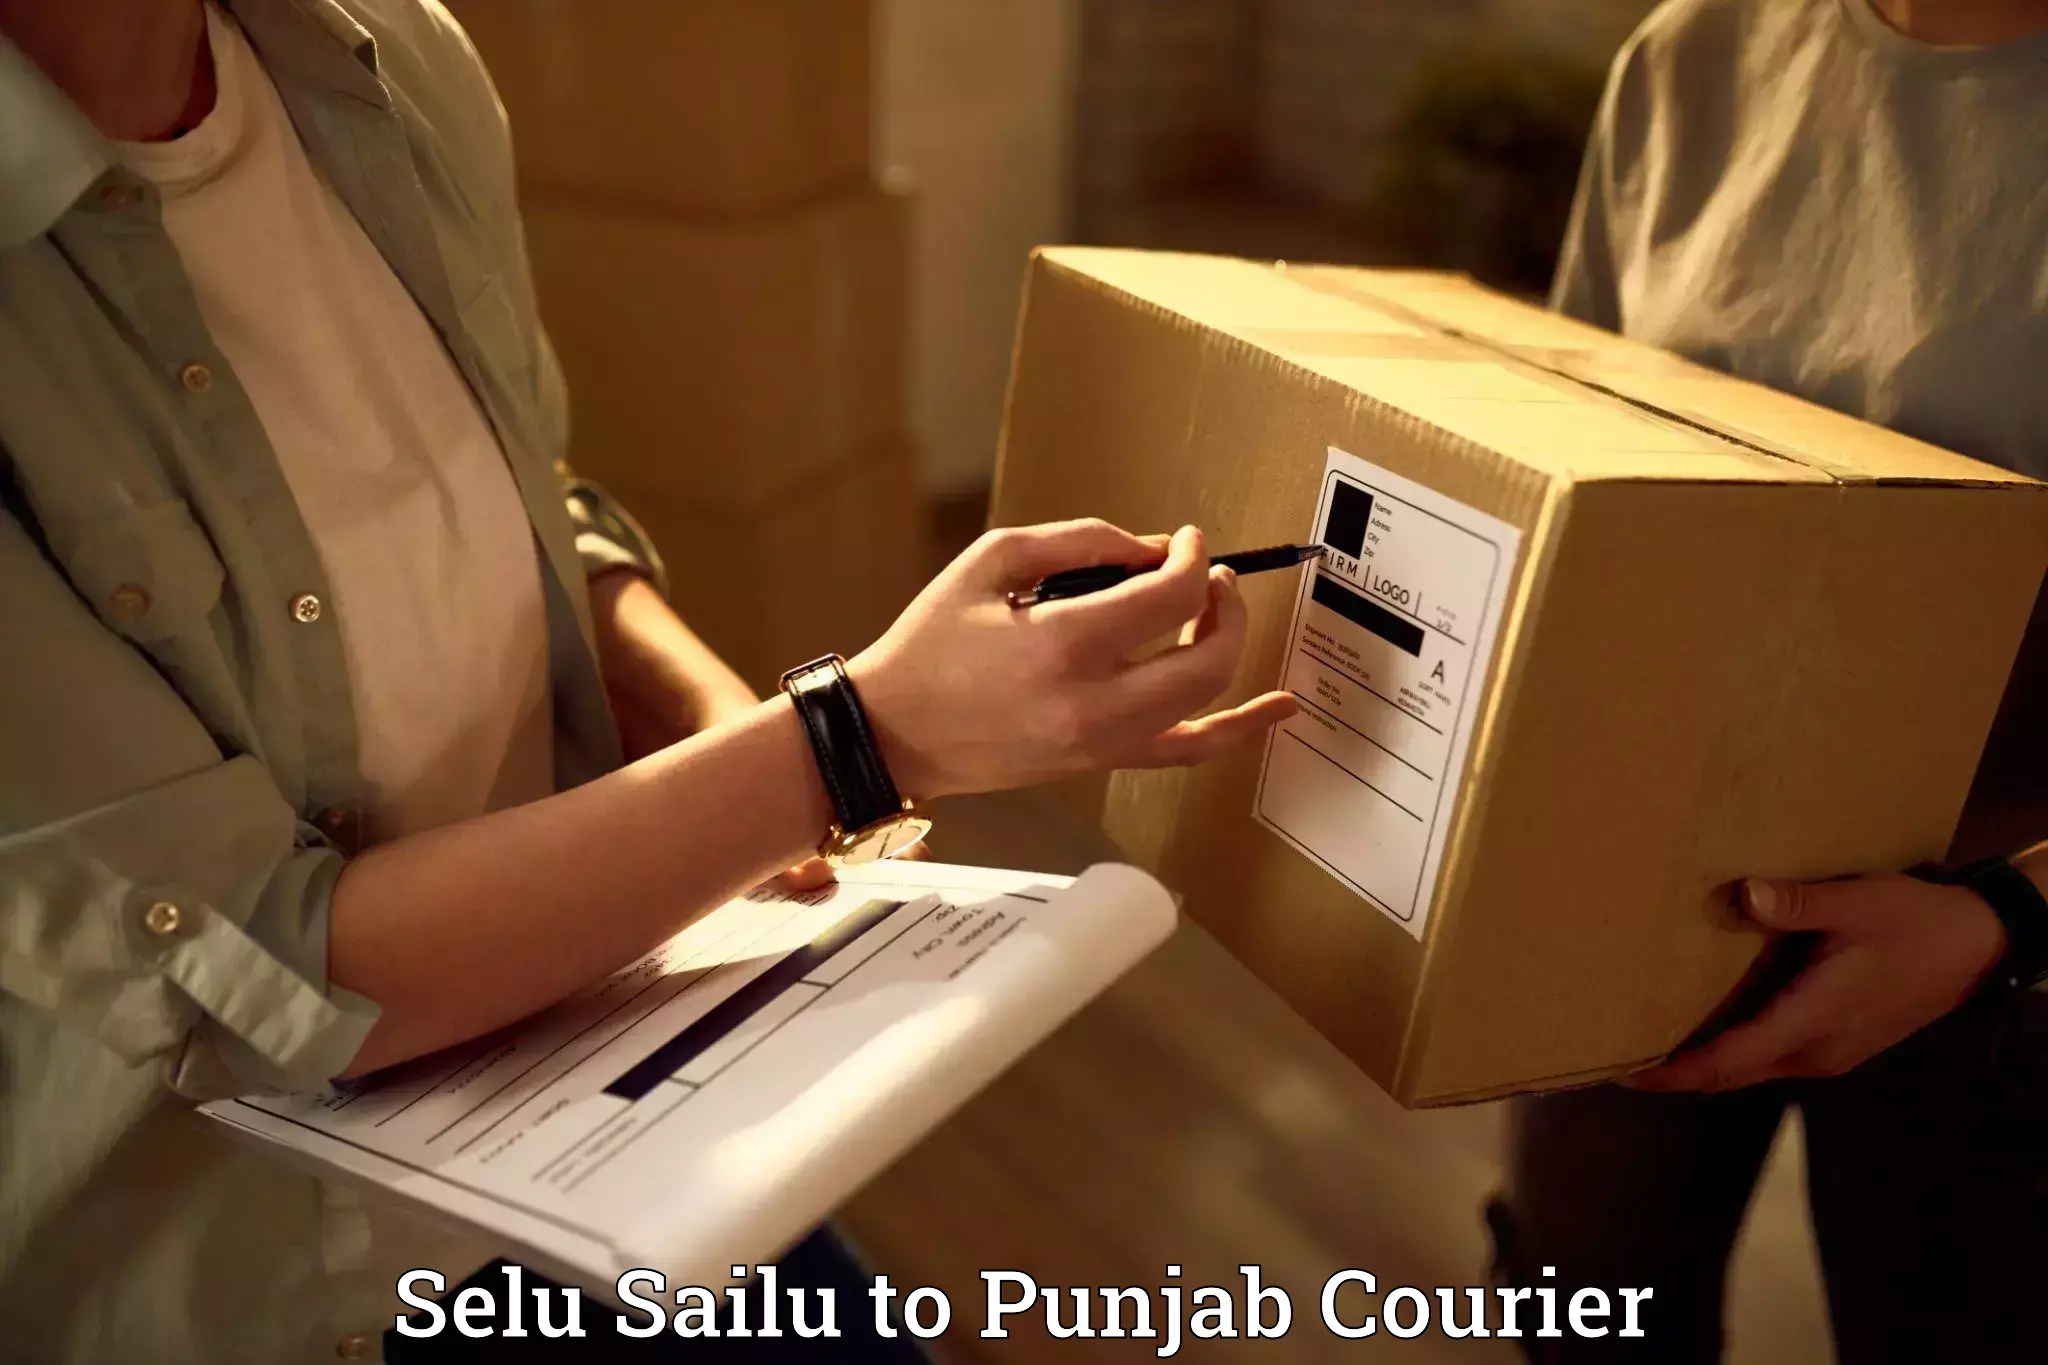 Local furniture movers Selu Sailu to Punjab